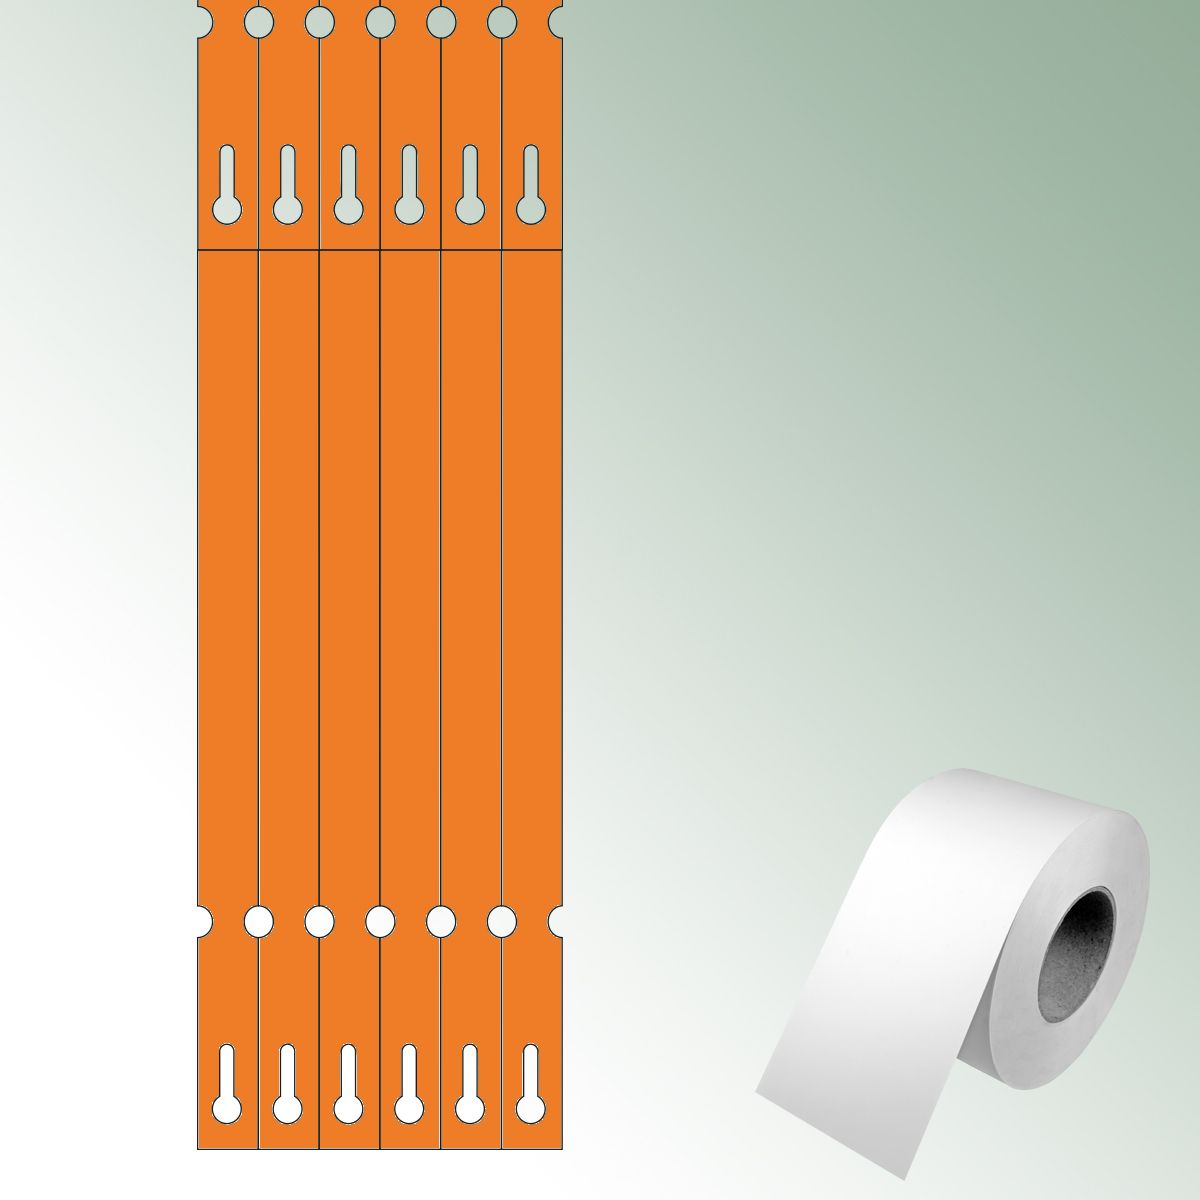 Opti-loops 250x17 orange, unprinted No./roll = 2000 pieces